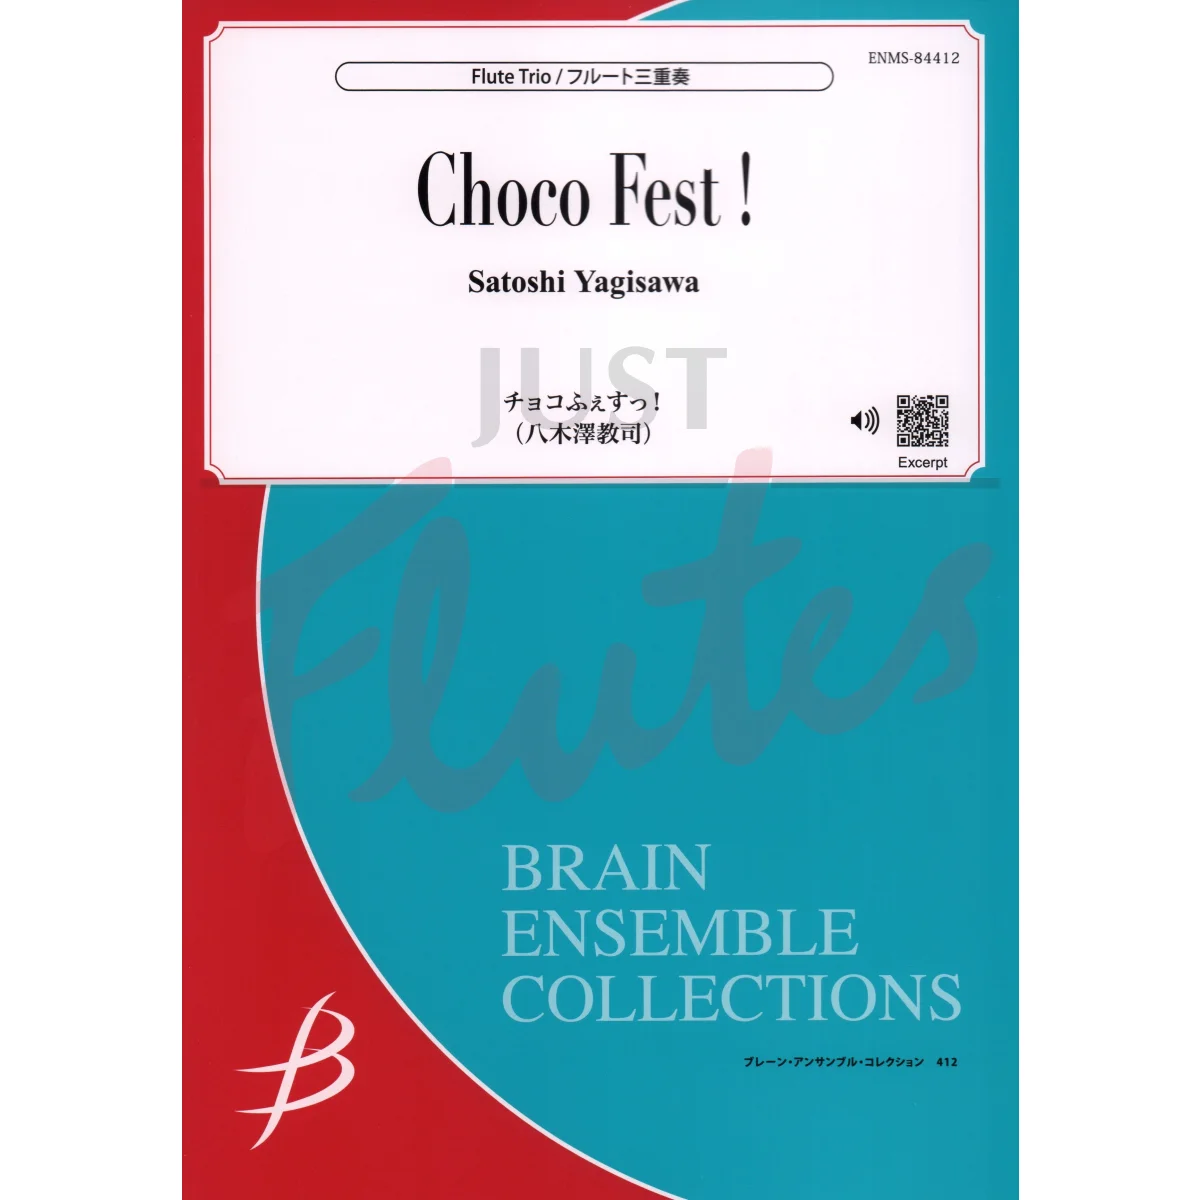 Choco Fest! for Flute Trio